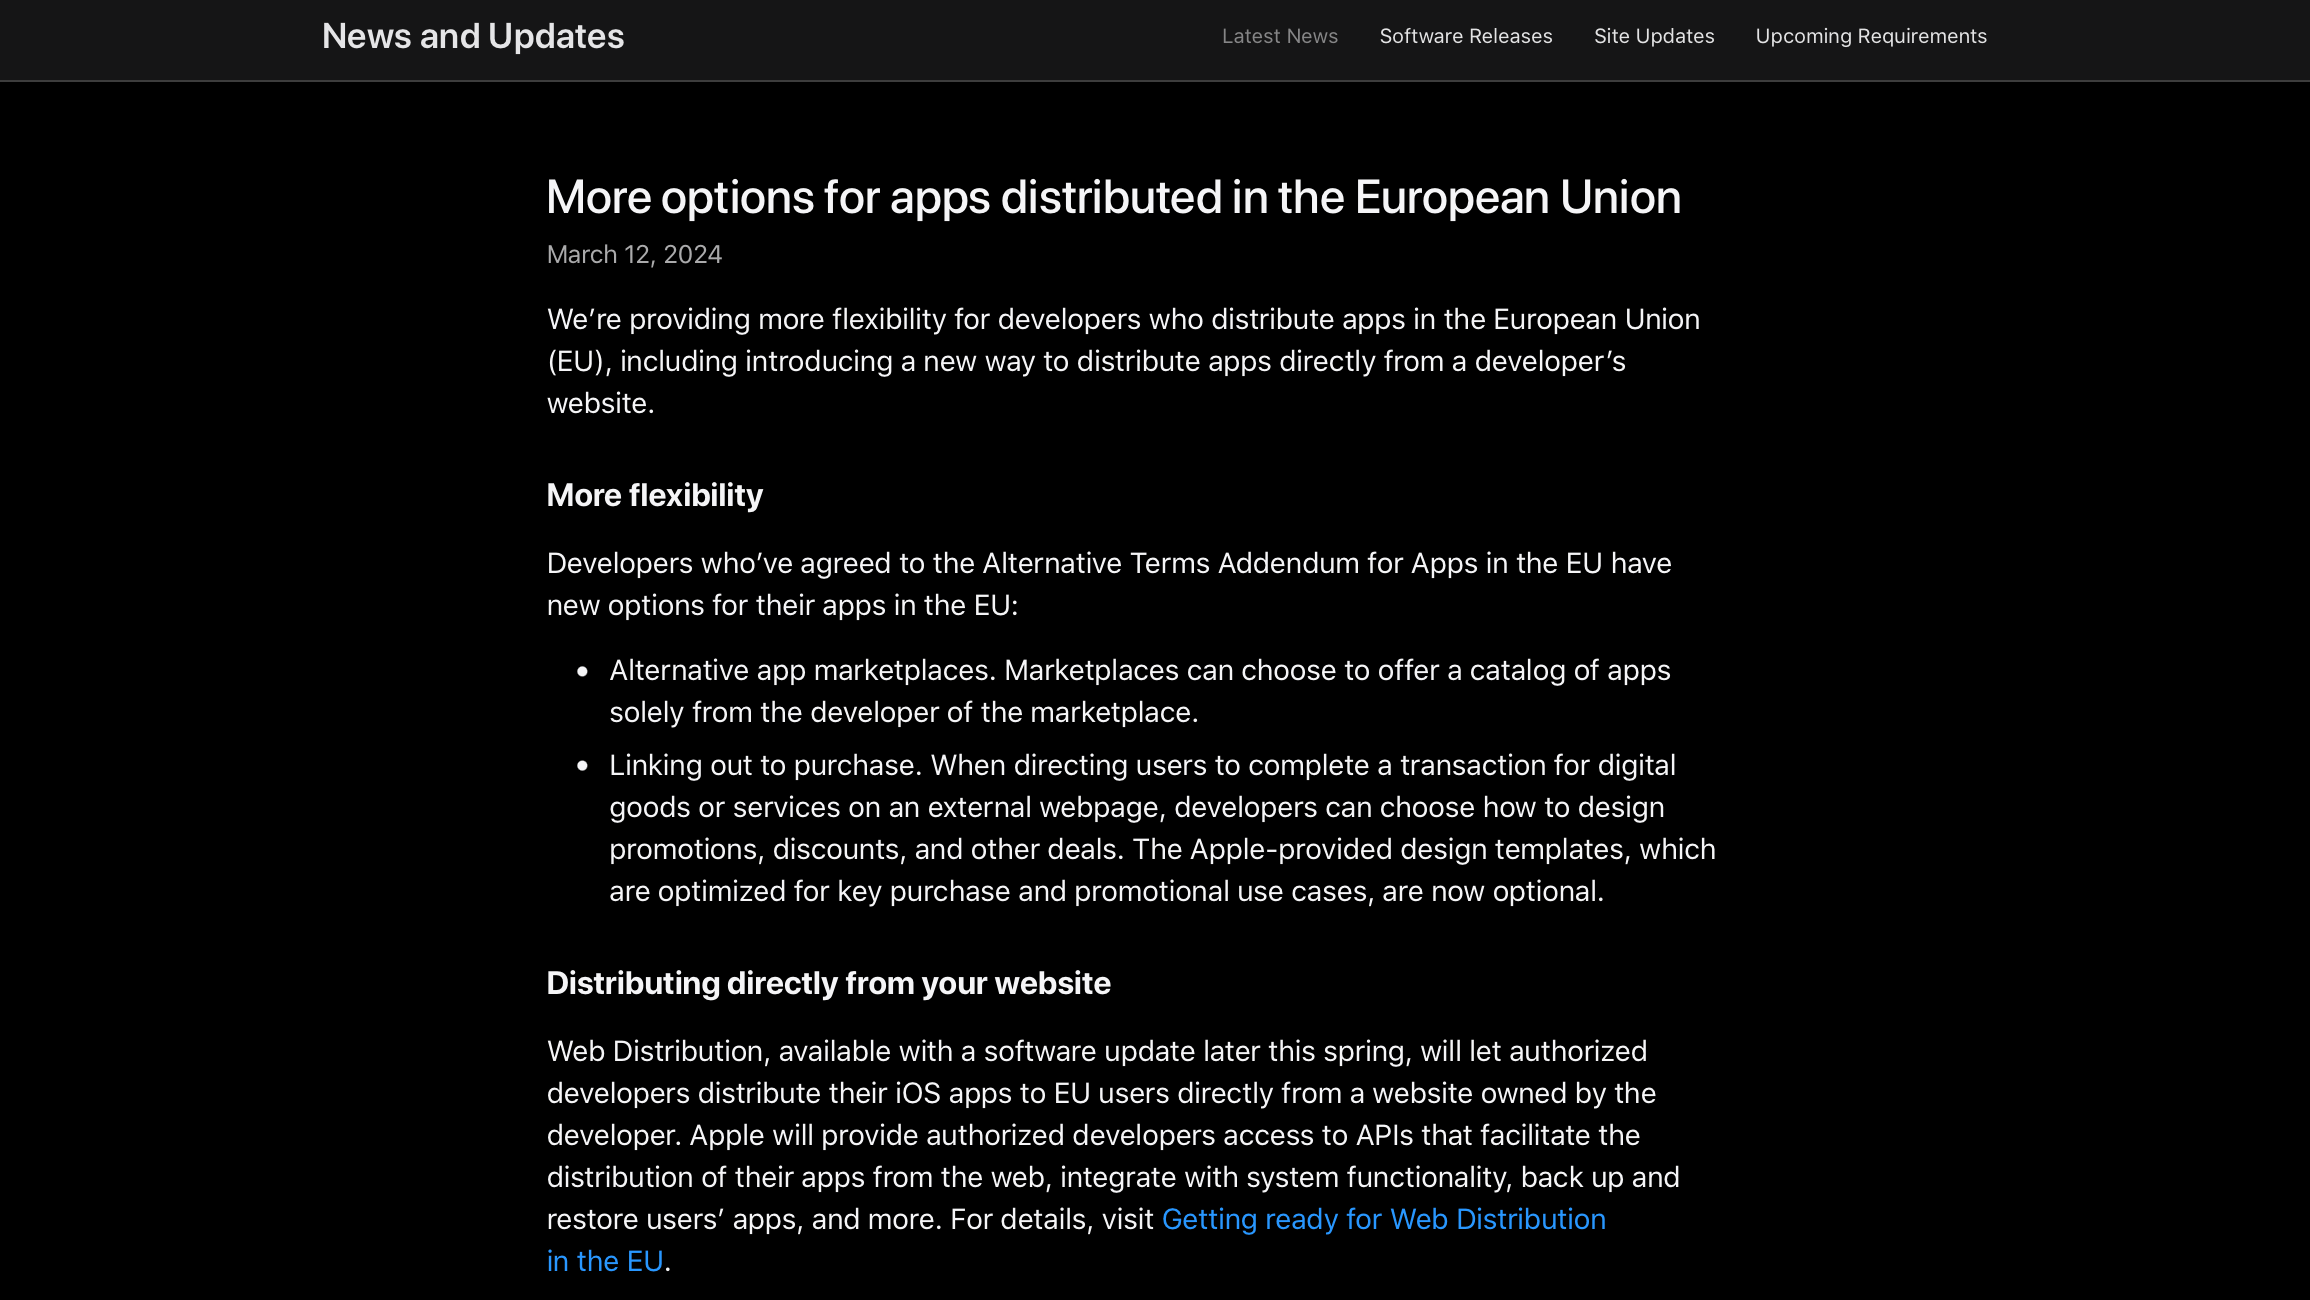 Változtat az Apple: az EU-ban egyes fejlesztők weboldaláról is letölthetünk majd appokat